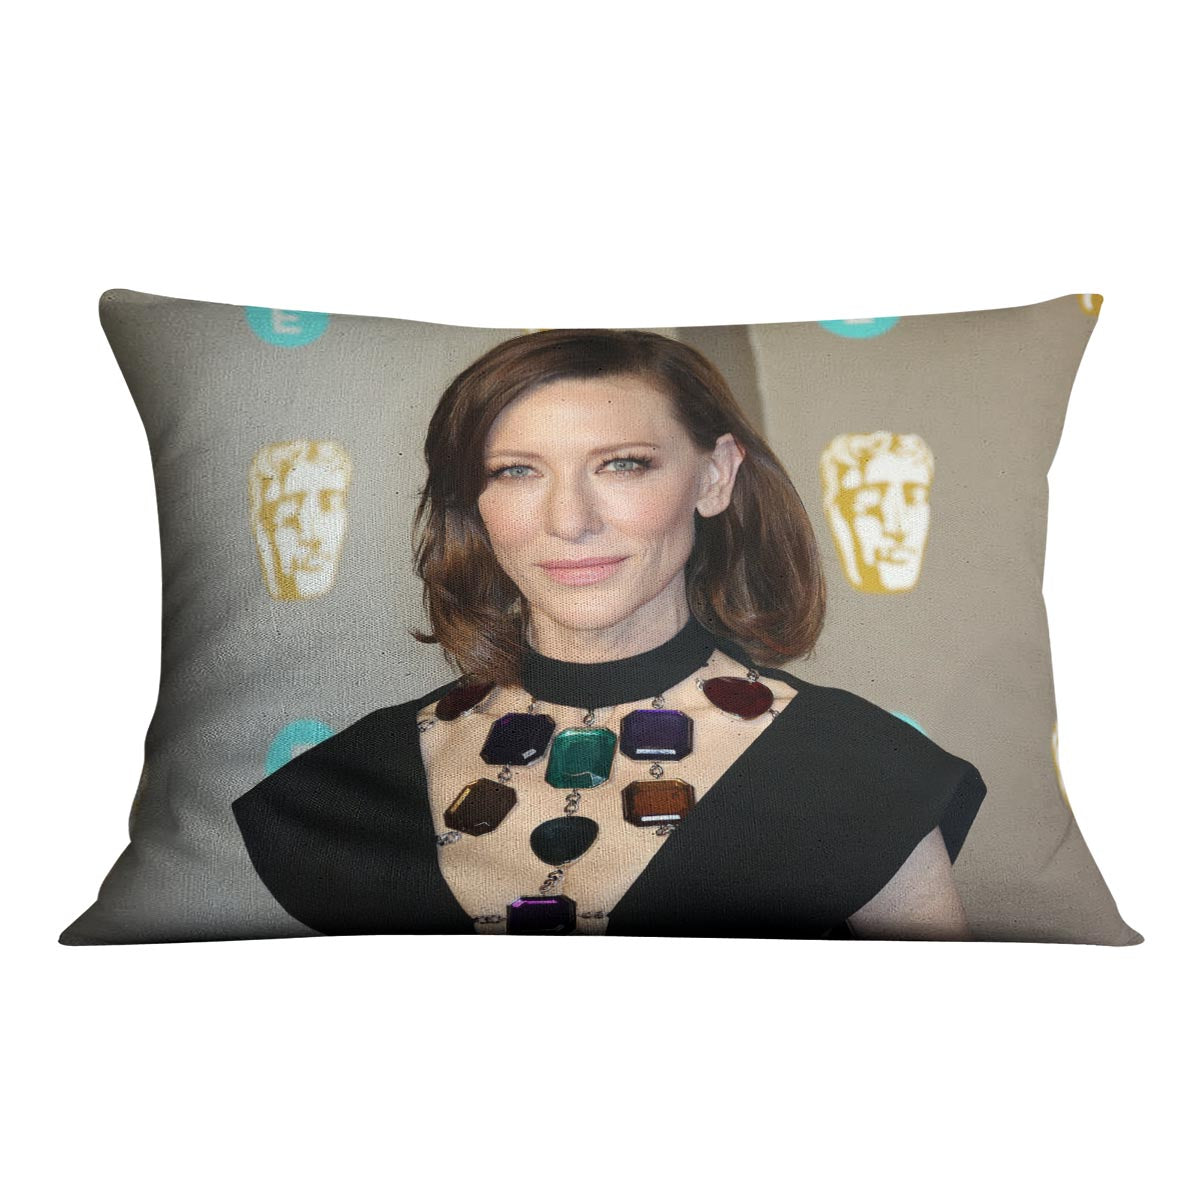 Cate Blanchett at the BAFTAs Cushion